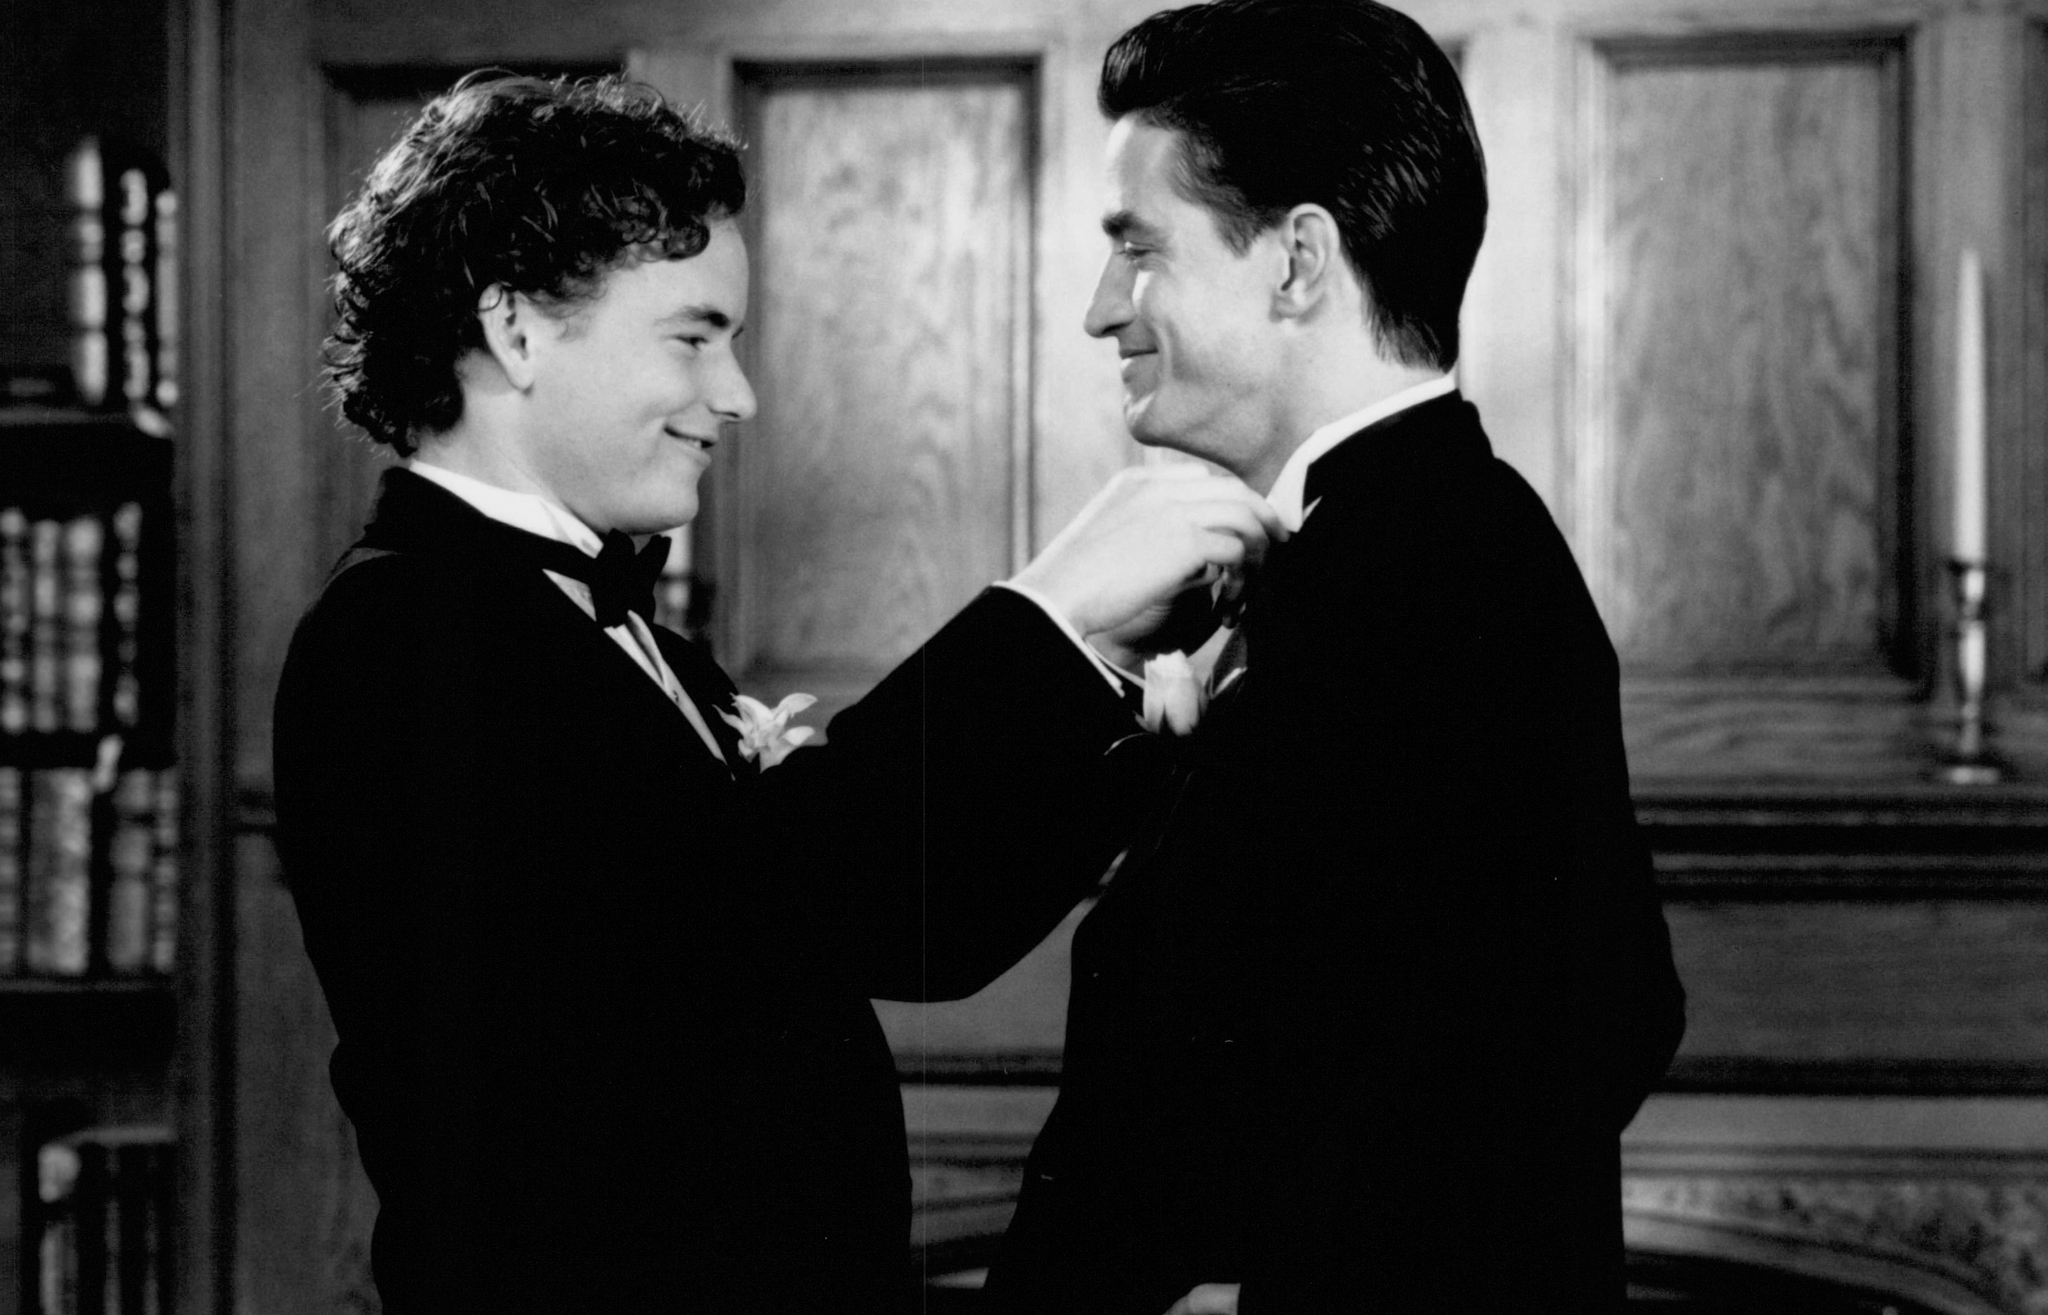 Still of Dermot Mulroney and Christopher Masterson in My Best Friend's Wedding (1997)